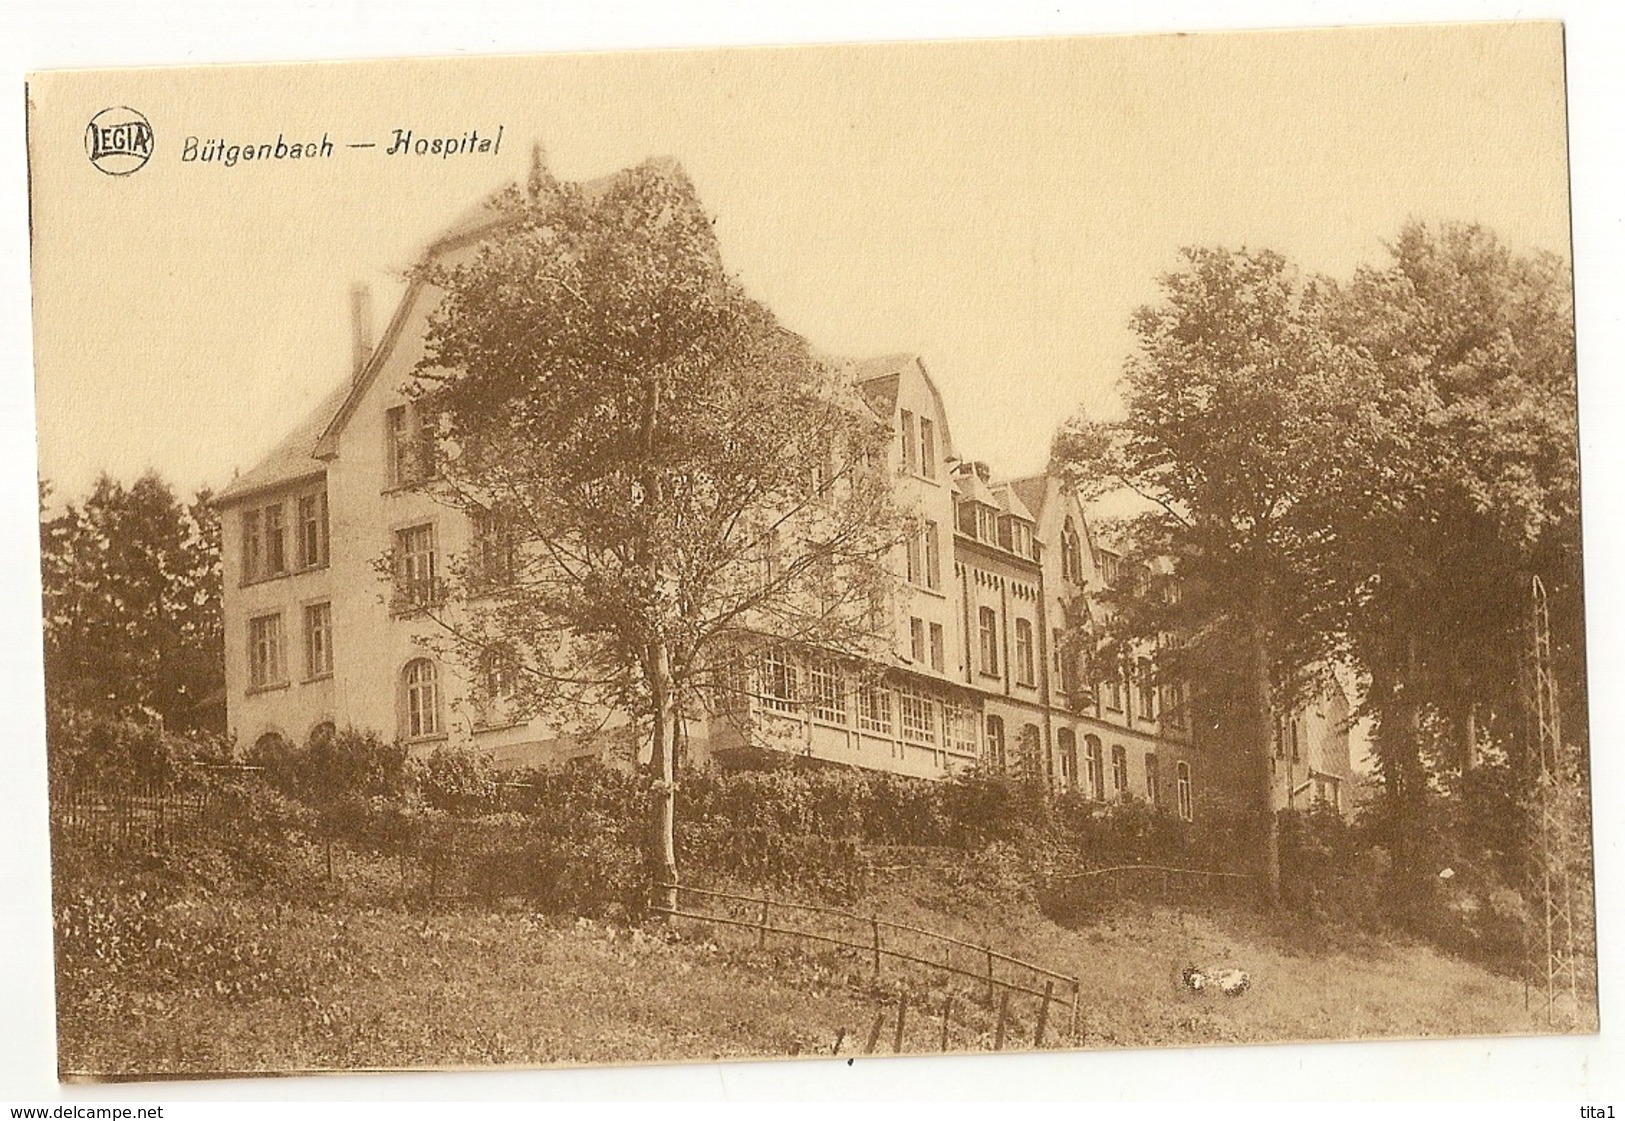 4 - Bütgenbach - Hospital - Bütgenbach